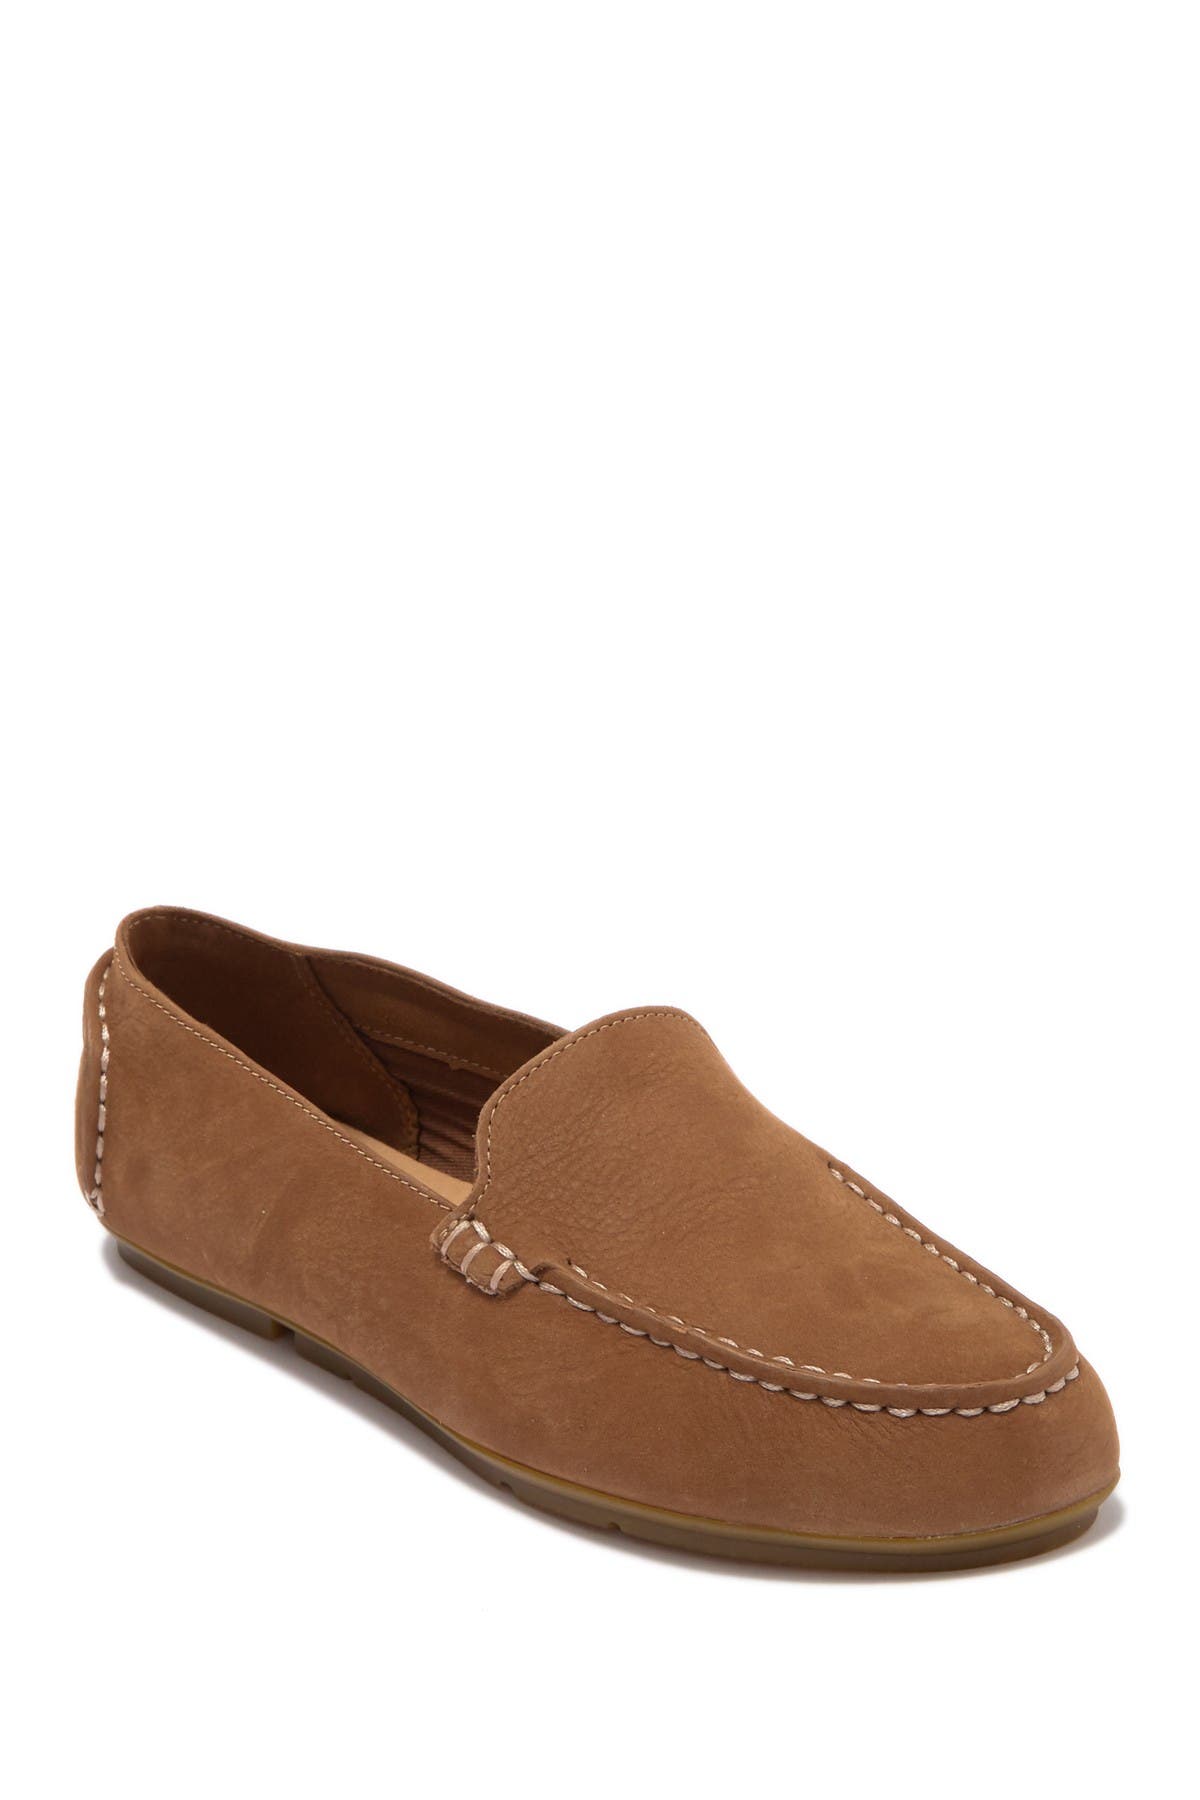 tan leatherette slip on loafer